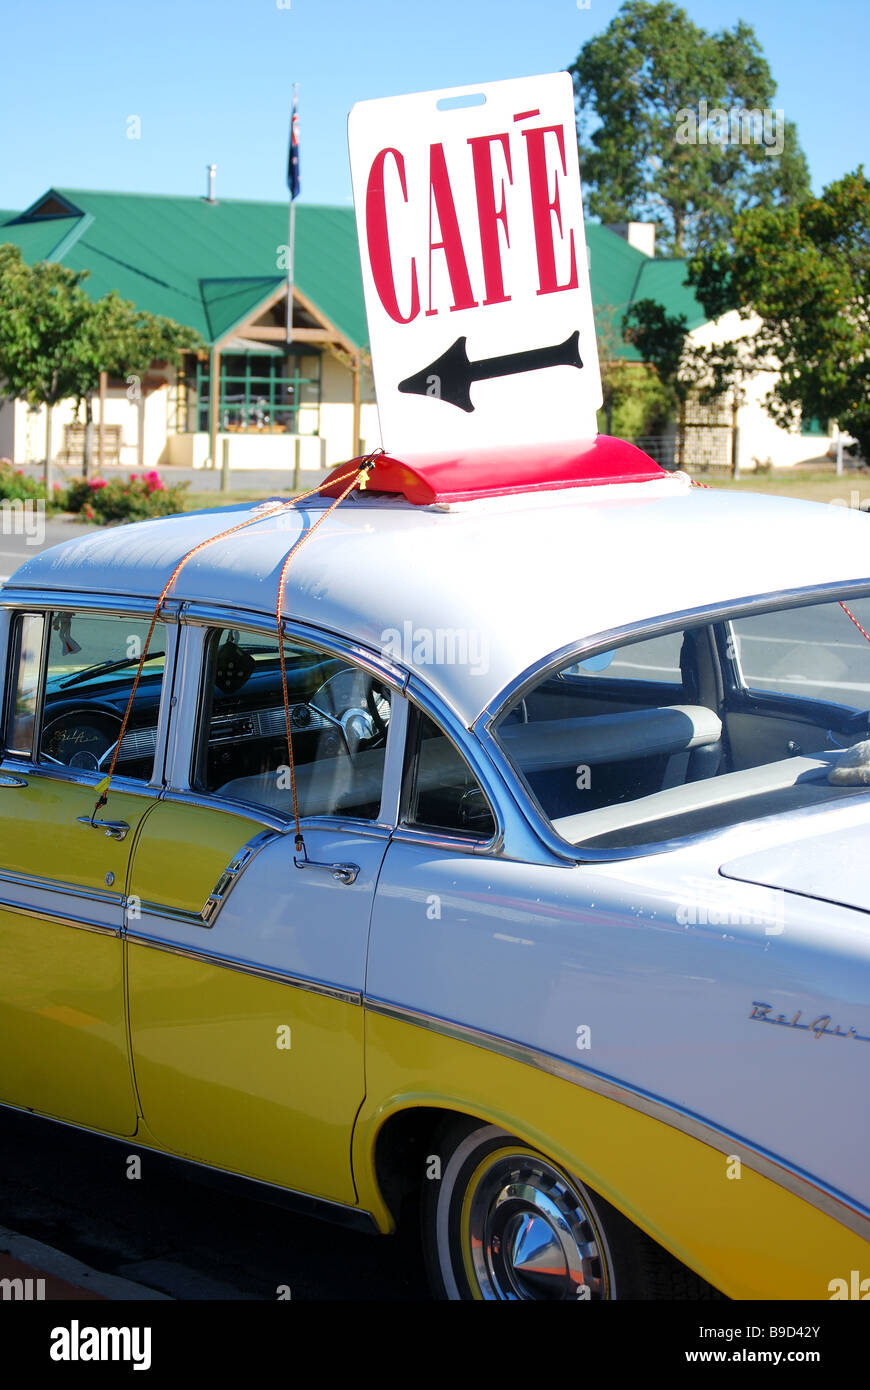 Cafe signe sur '60's American Chevrolet, terrasse sud, Darfield, Selwyn, District de la région de Canterbury, île du Sud, Nouvelle-Zélande Banque D'Images